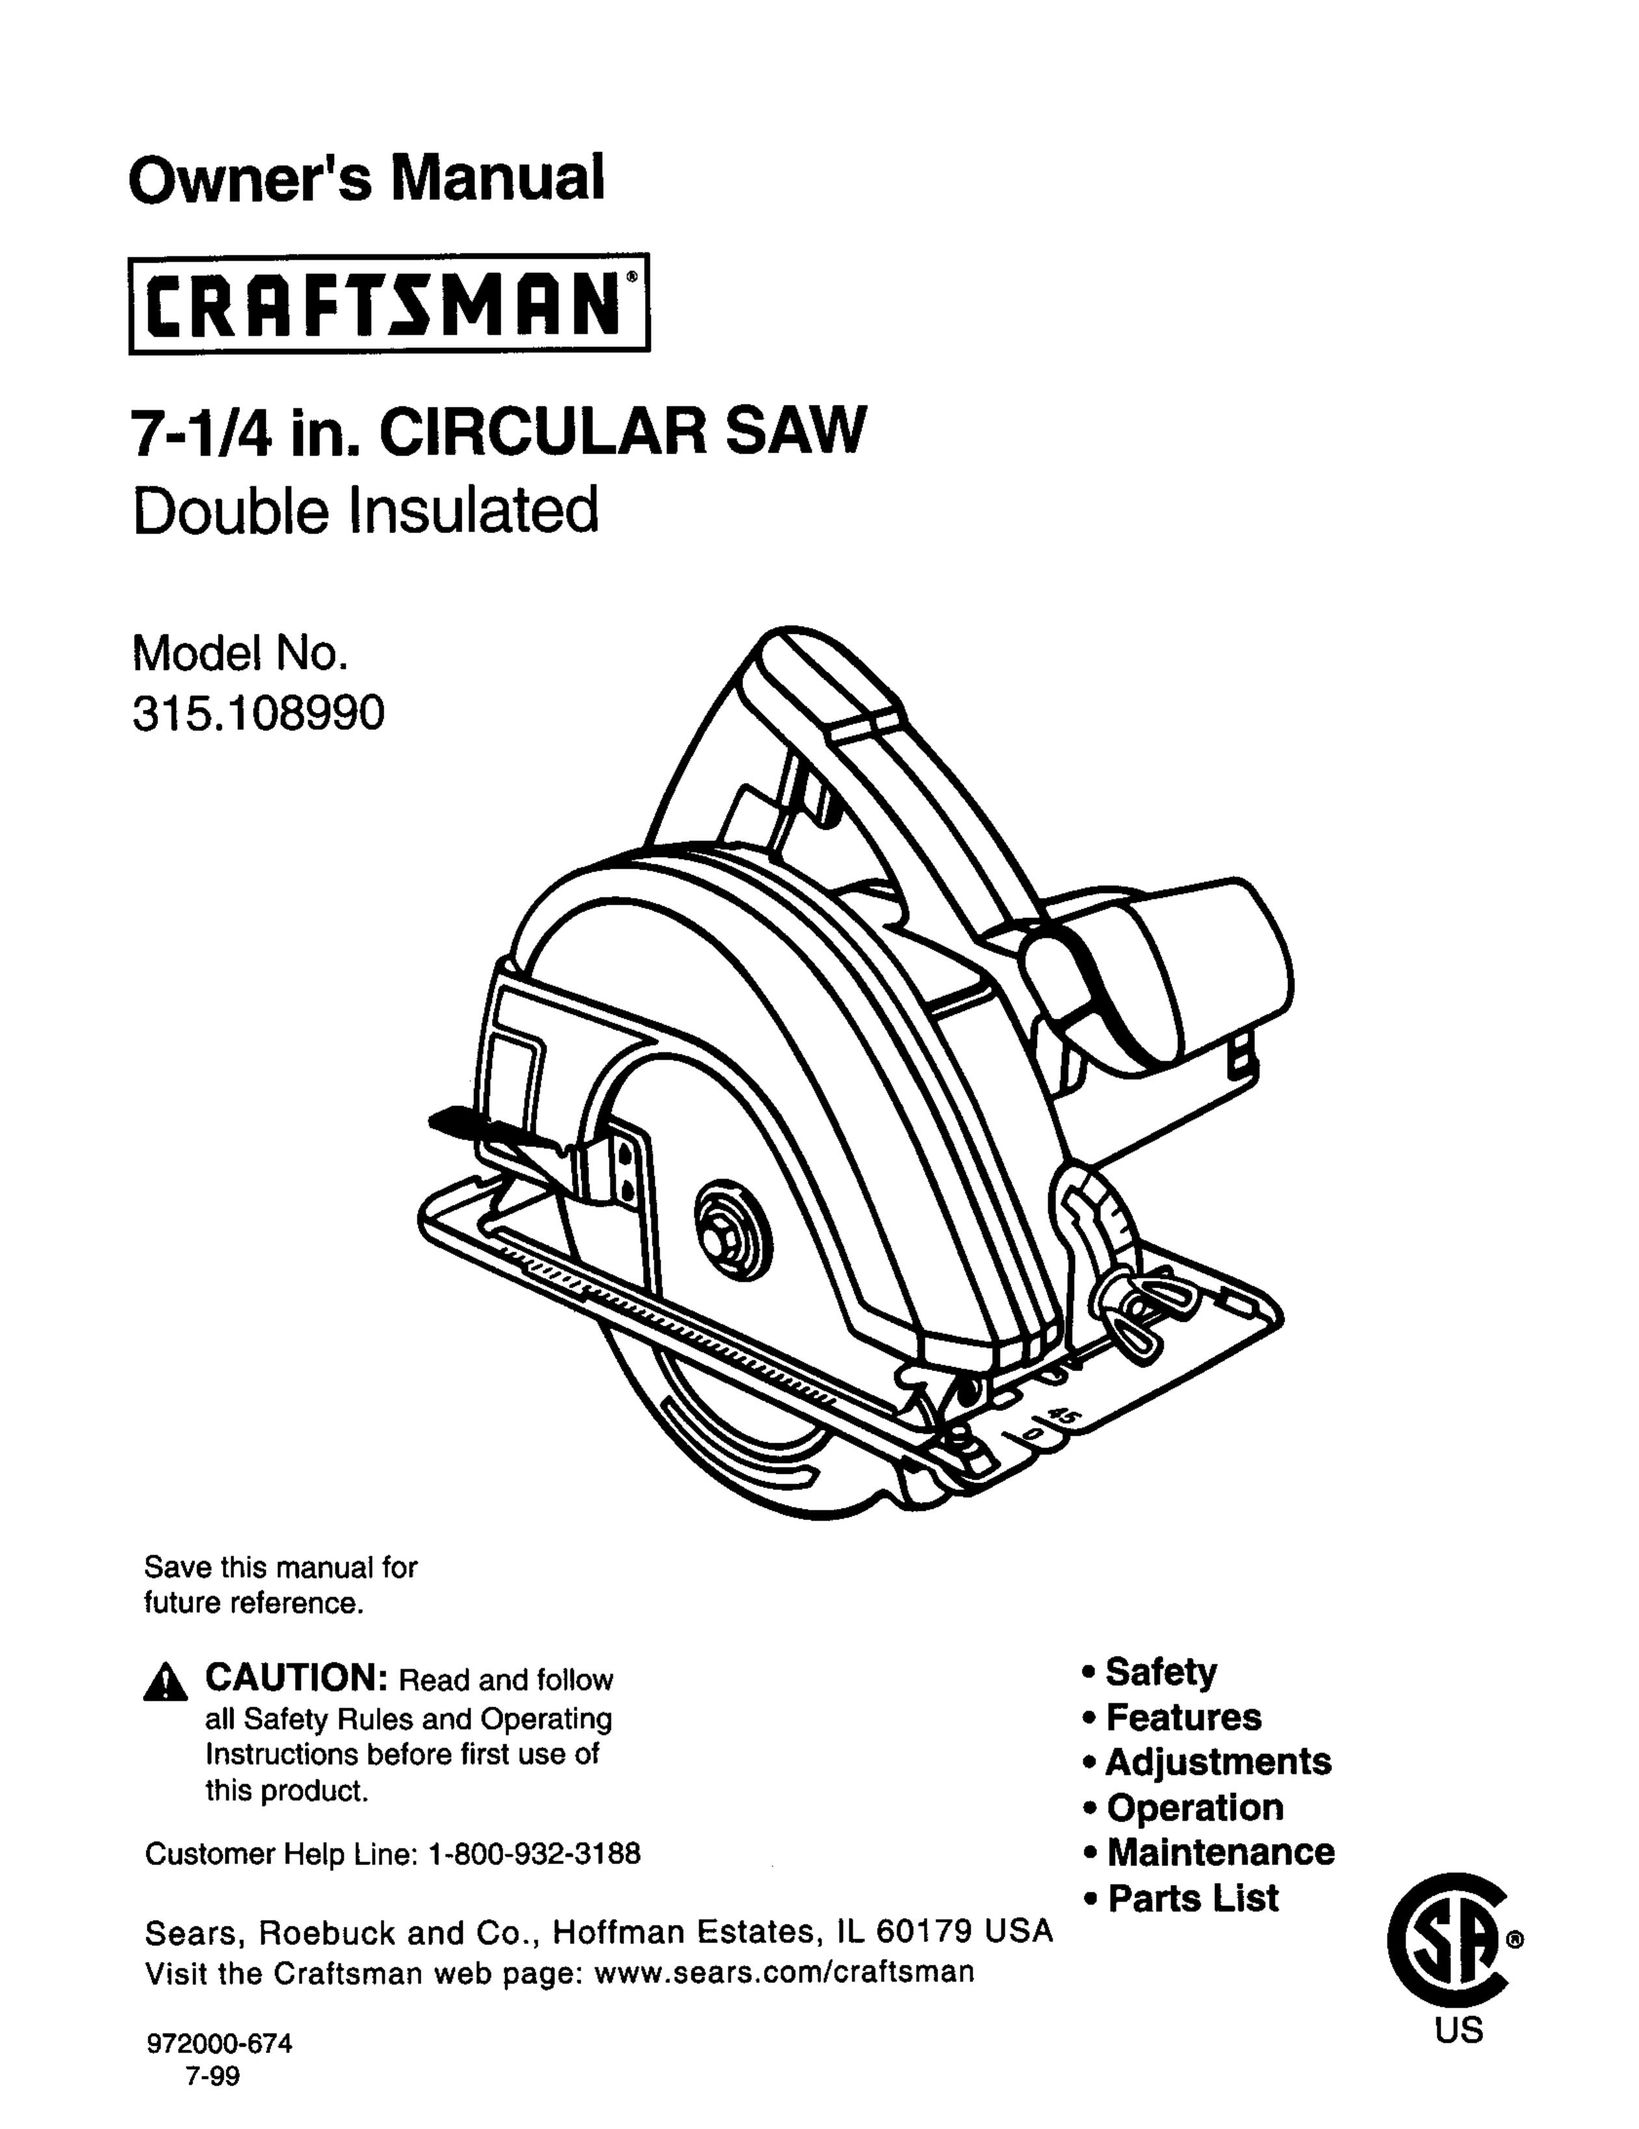 Craftsman 315.10899 Saw User Manual